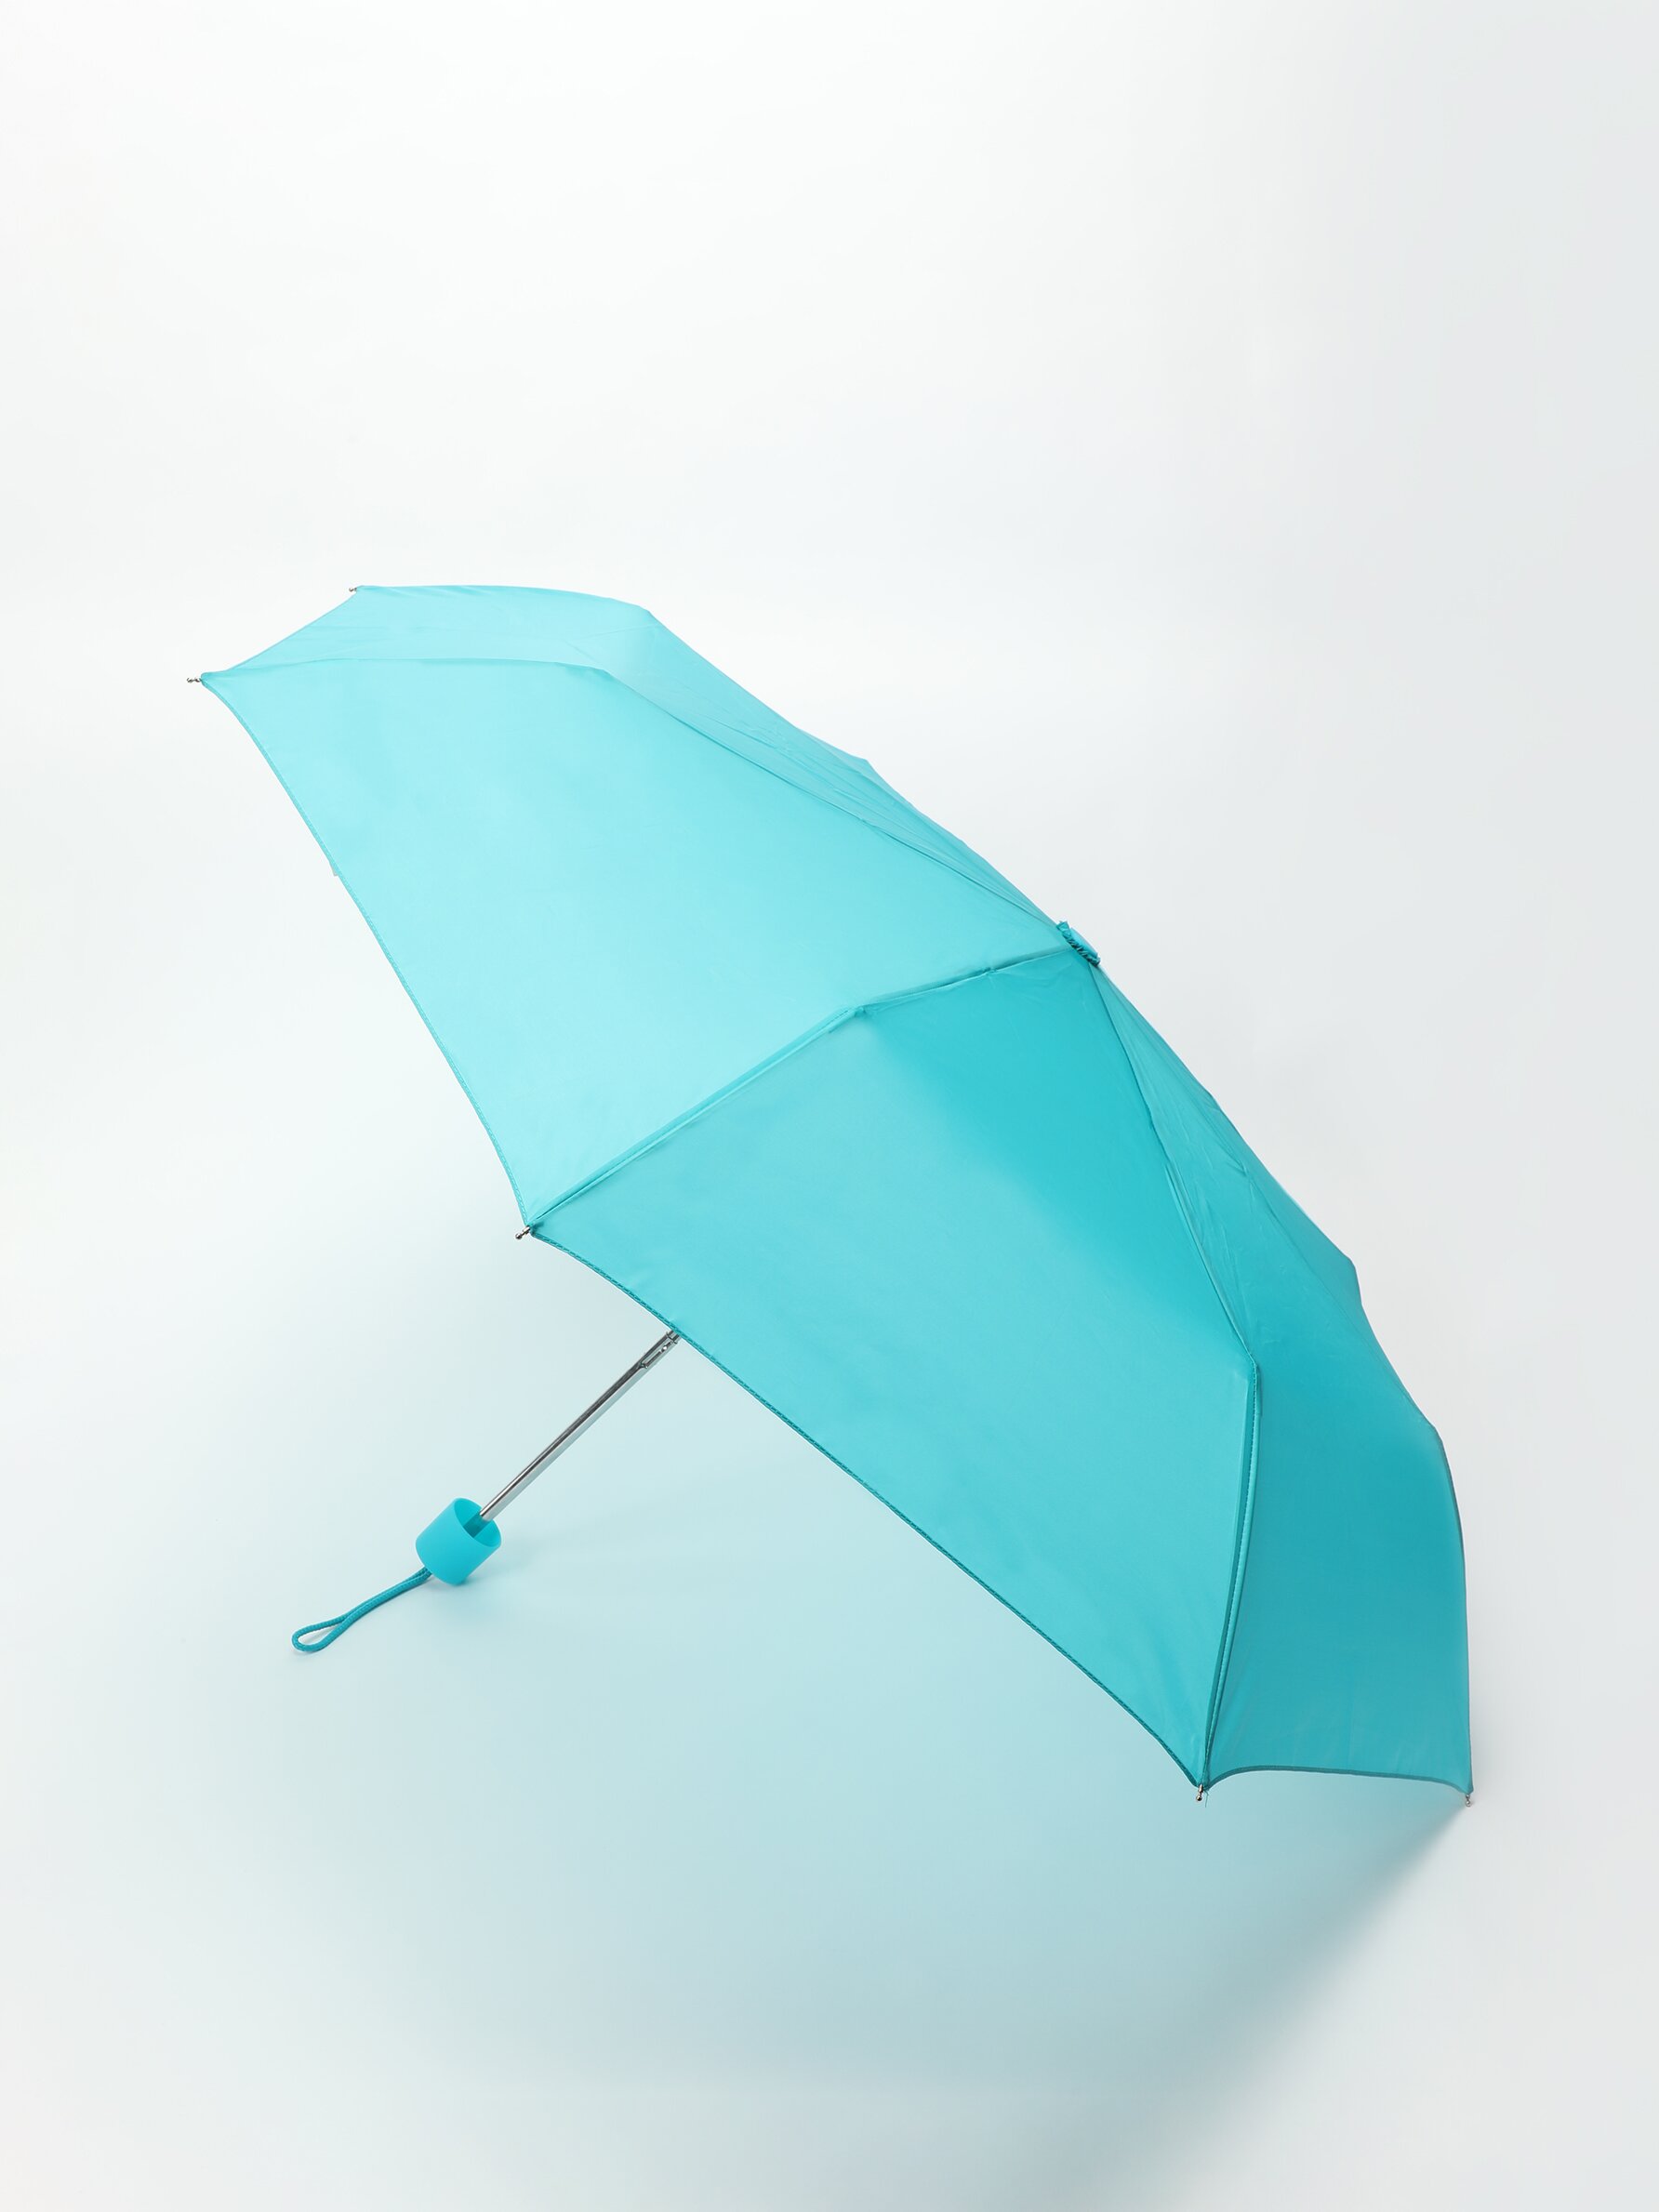 Parasol Umbrella Accessories Umbrellas & Rain Accessories 